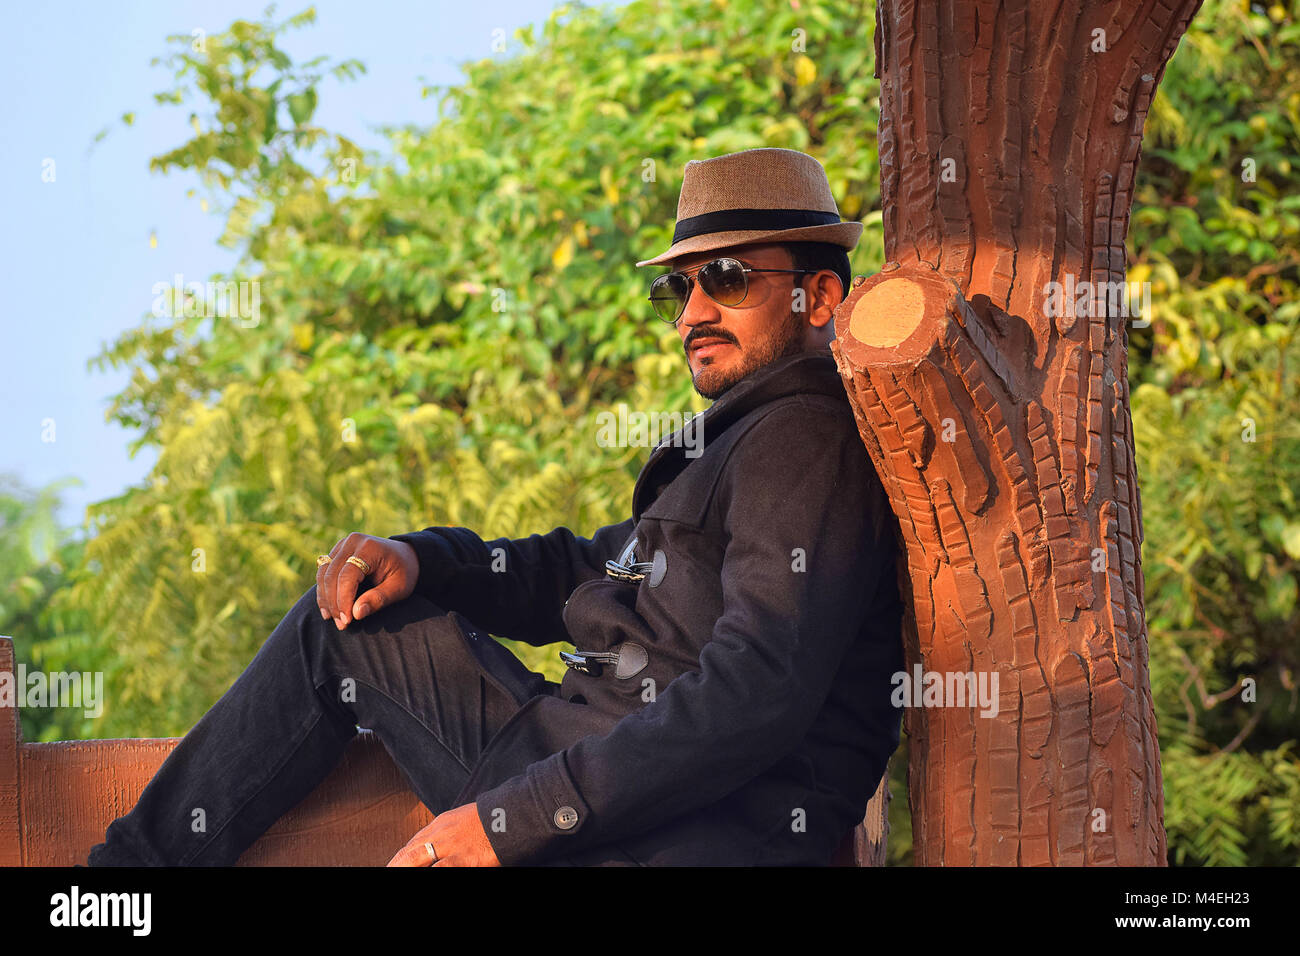 Homme dans un chapeau et blouson noir assis contre un tronc d'arbre, Pune, Maharashtra. Banque D'Images